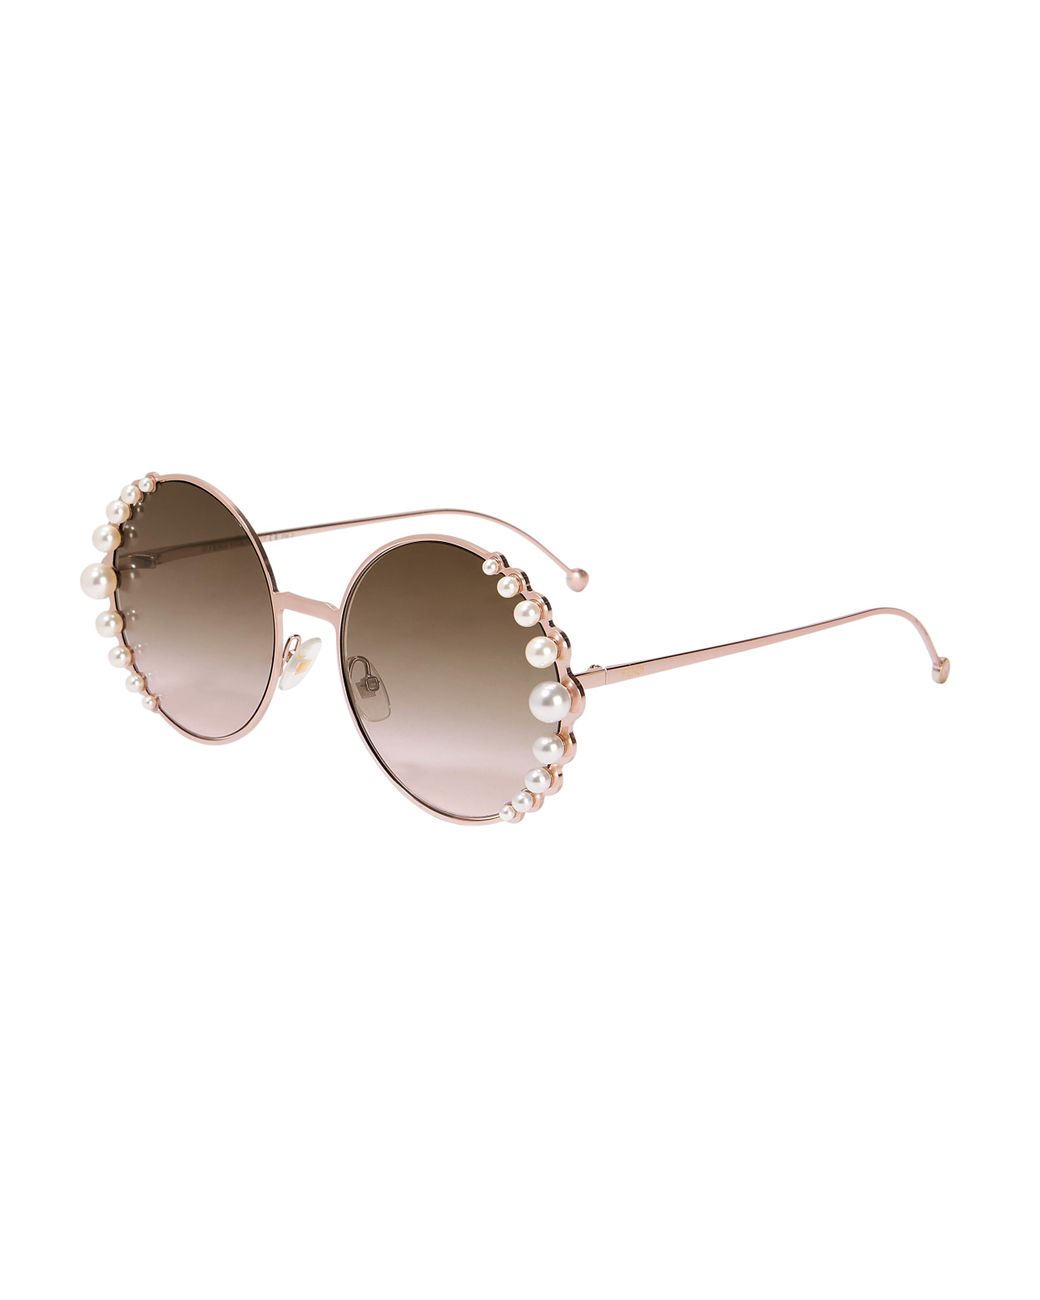 Monaco | Sunglasses | Cream Mother of Pearl – PRISM LONDON